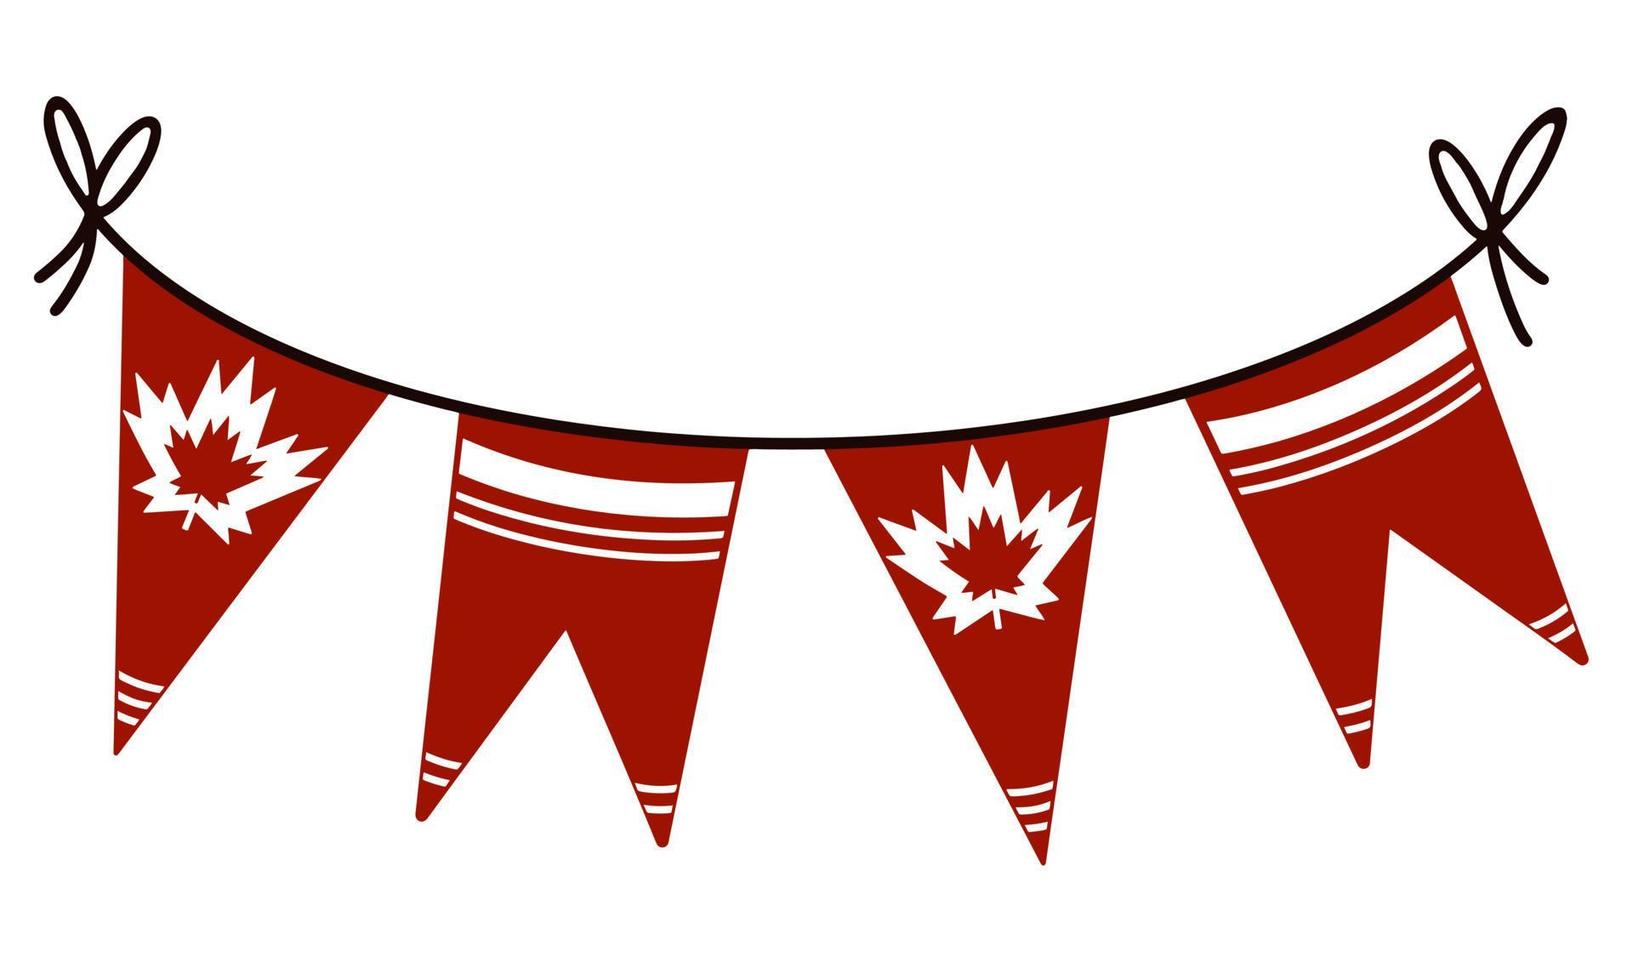 vektor illustration för Kanadas dag. krans med Kanadas flagga. isolerade banner på en vit bakgrund. flaggor på ett snöre med lönnlöv och prydnad.